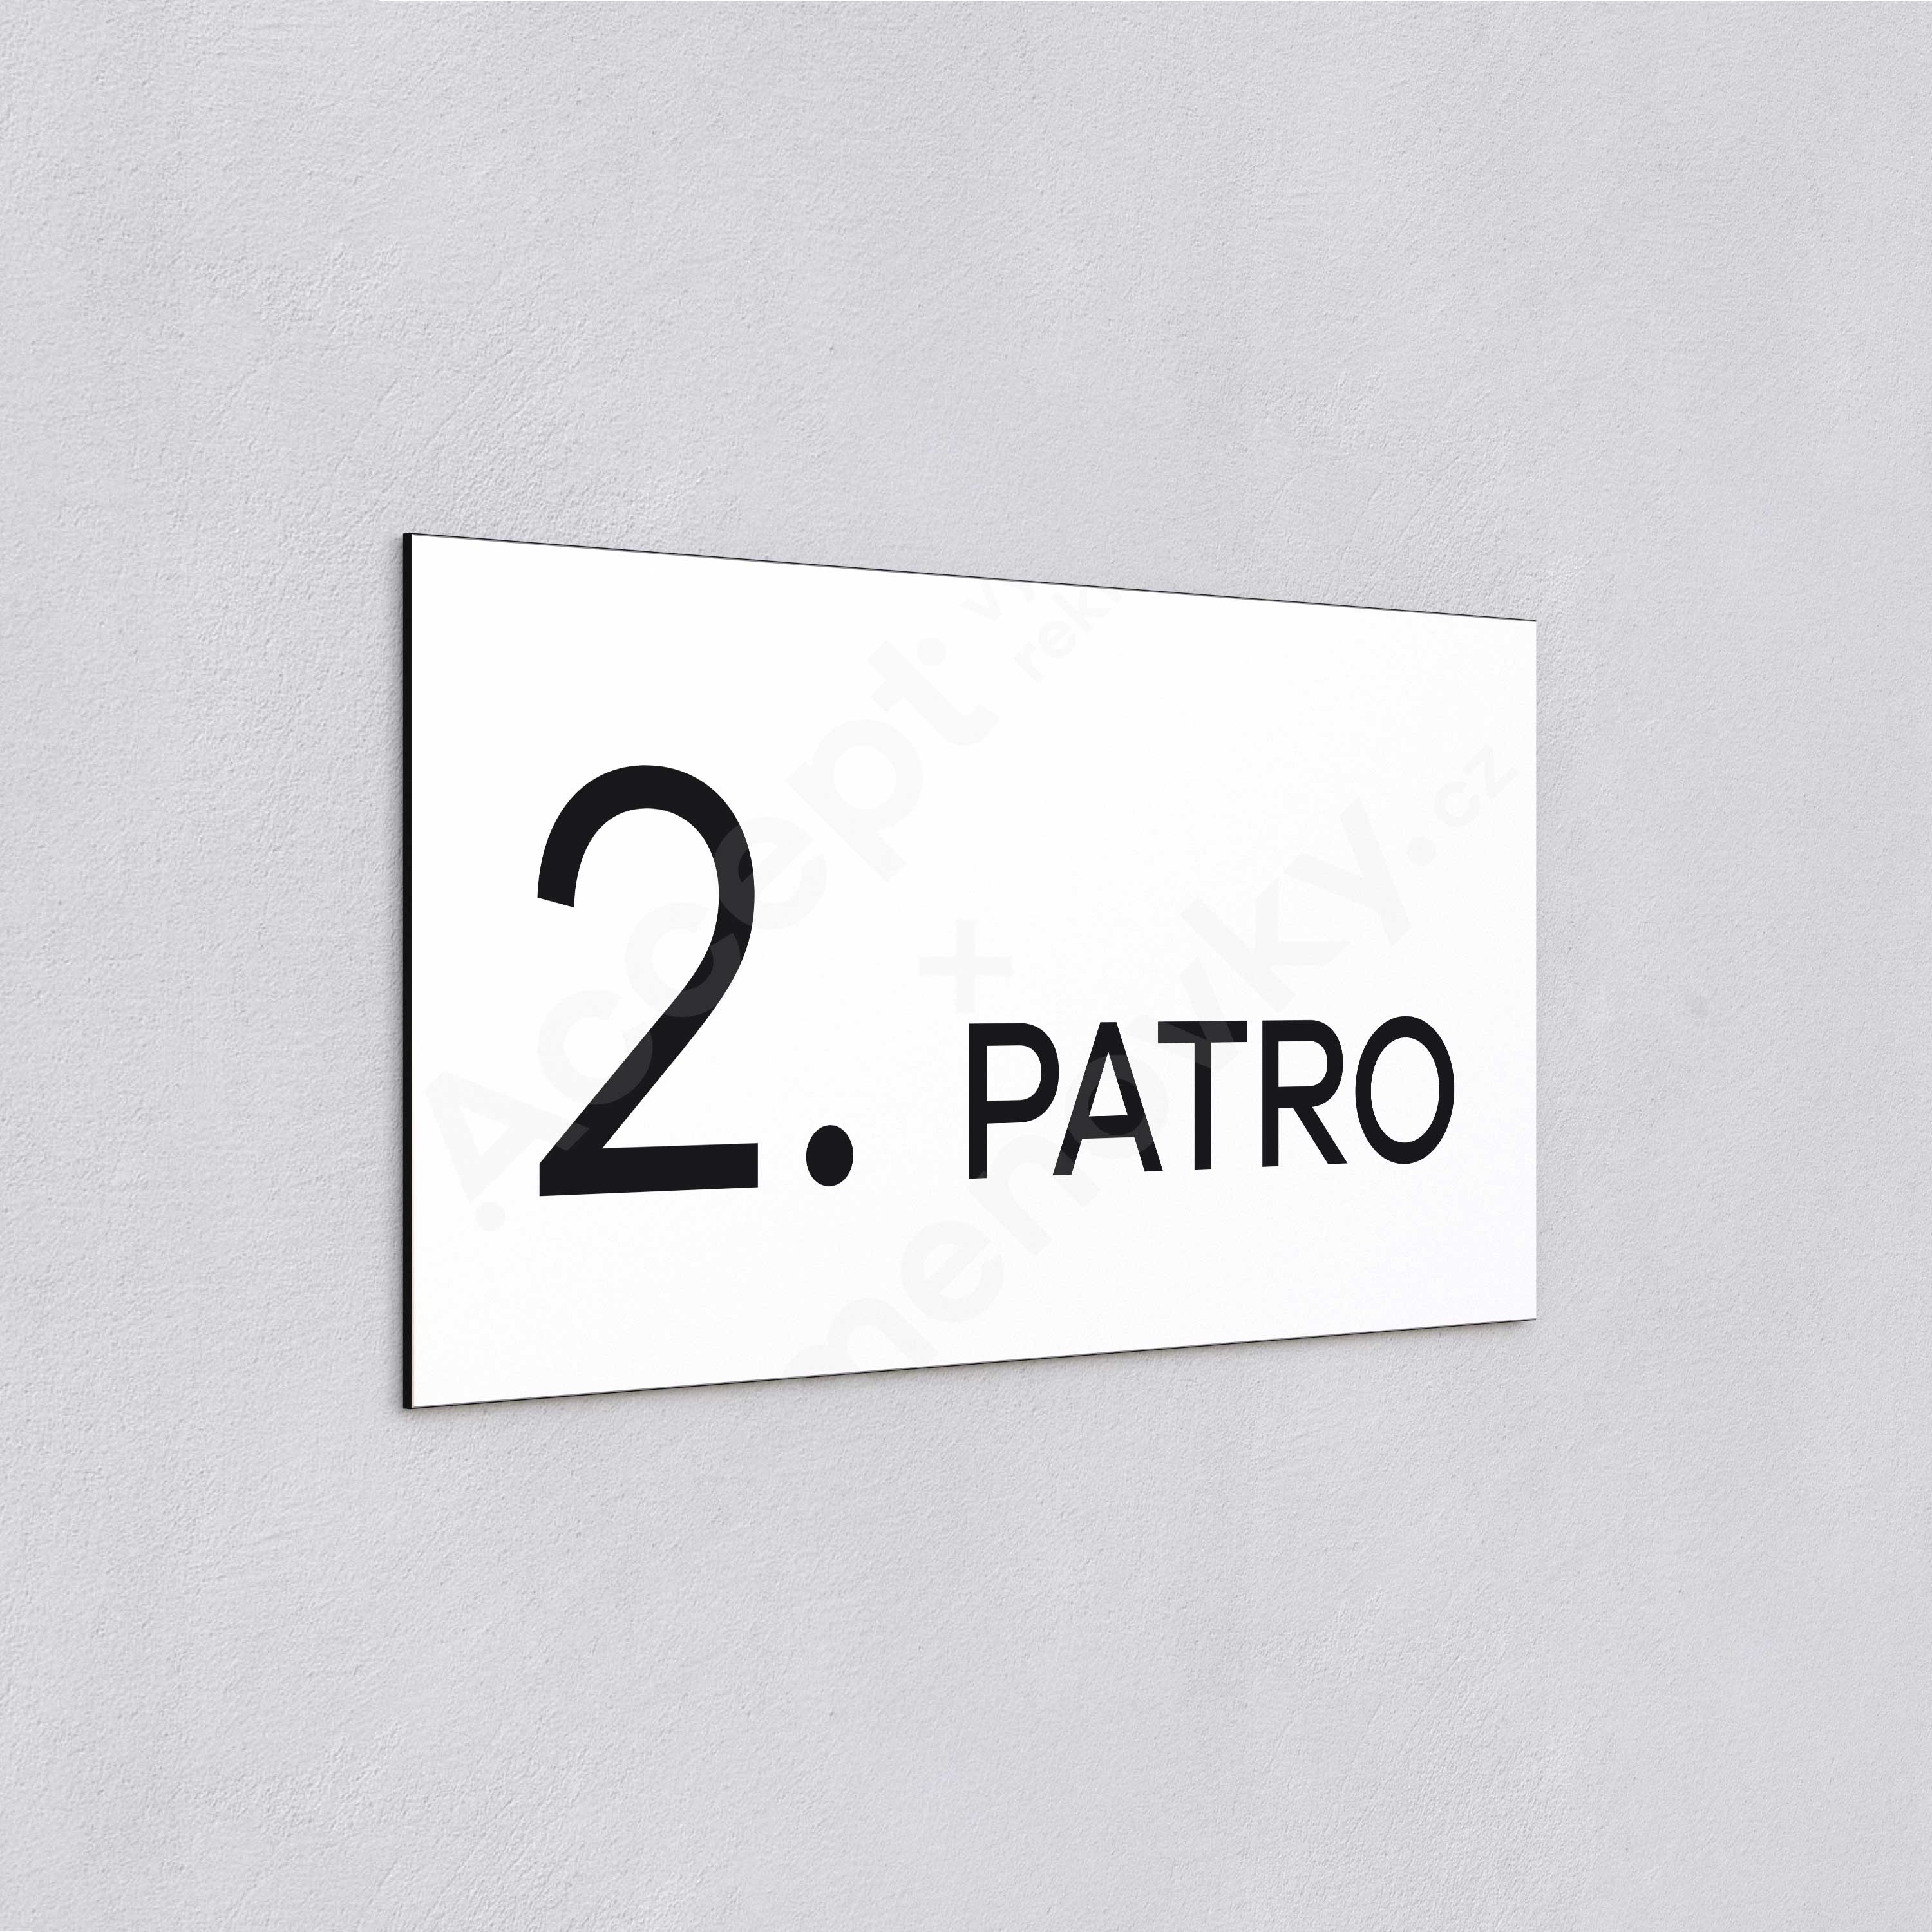 Označení podlaží "2. PATRO" - bílá tabulka - černý popis